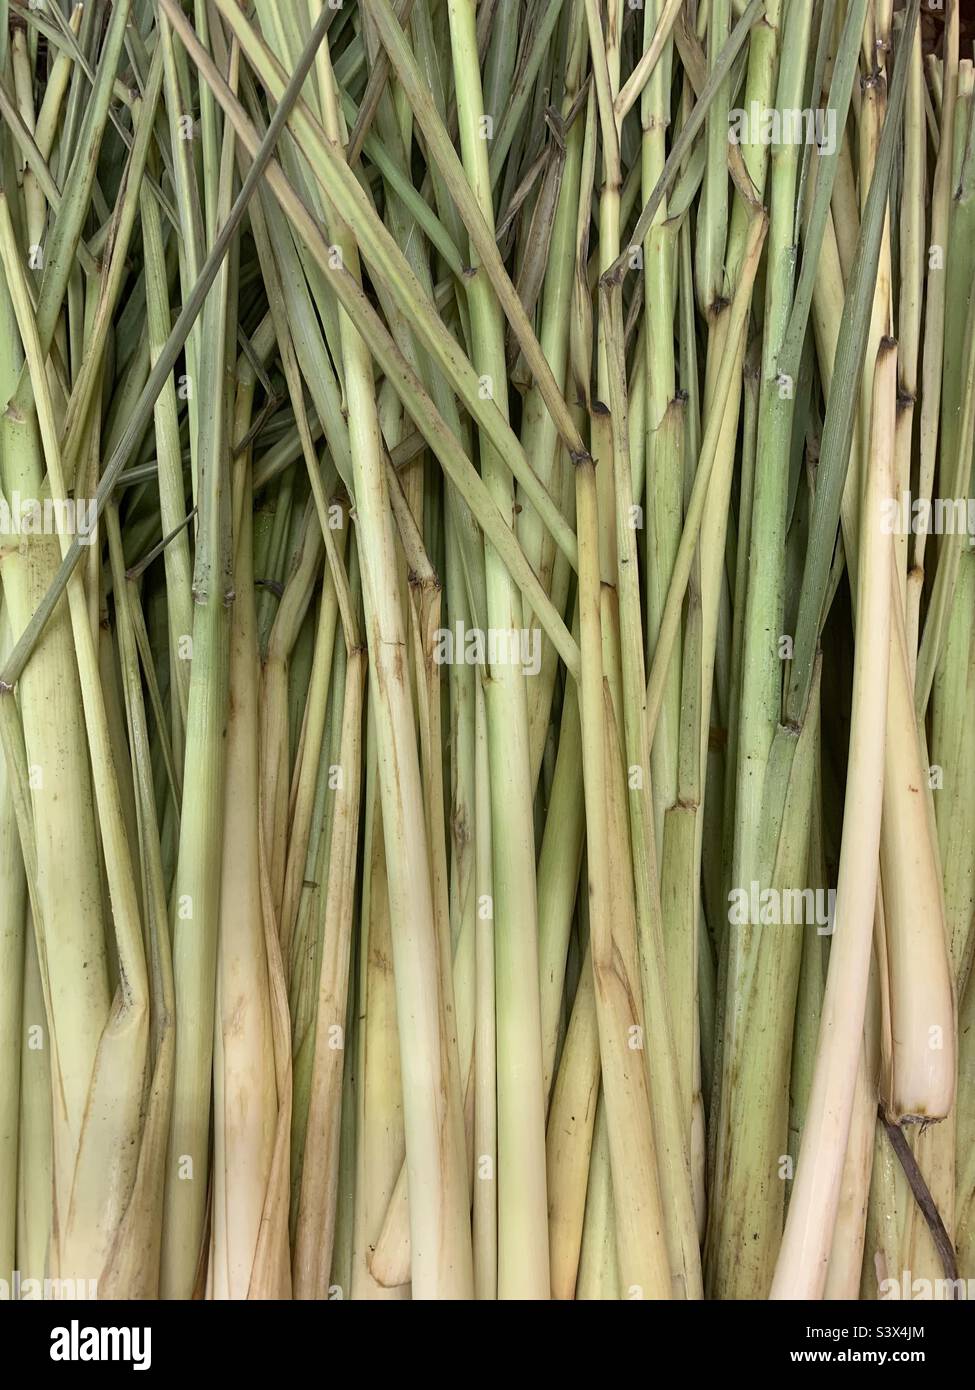 Full frame view of fresh lemongrass stalks. Stock Photo